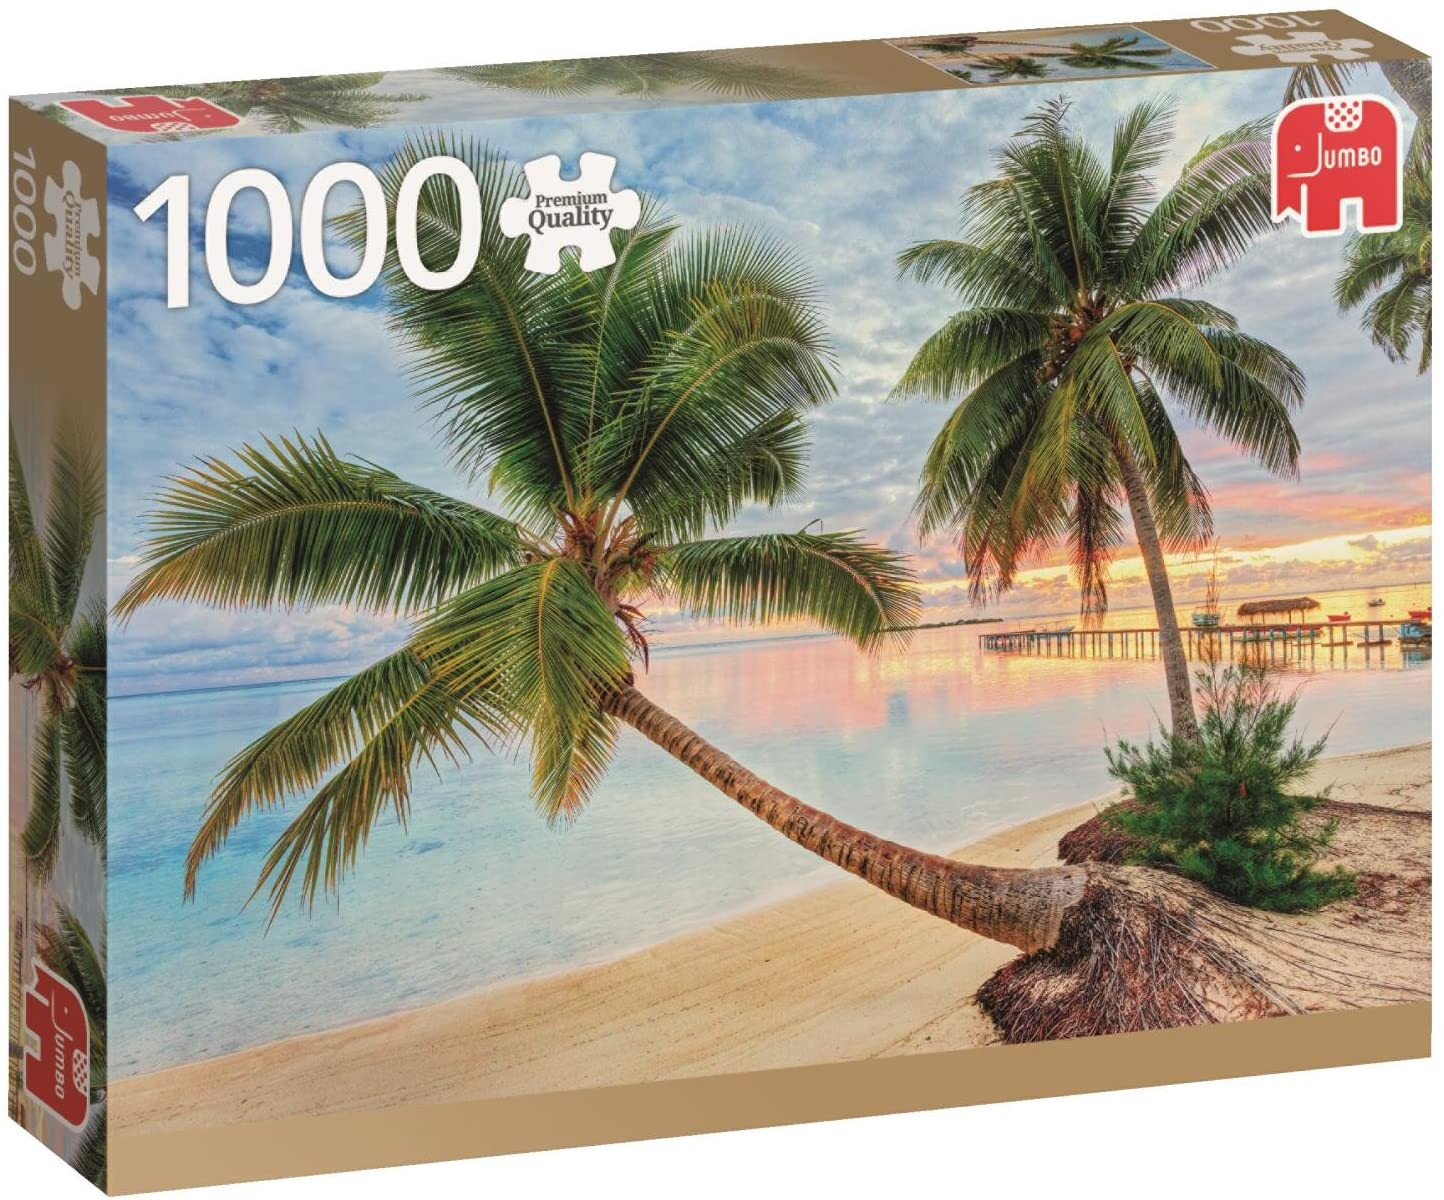 Puzzle 1000 pzs. PC French Polynesia